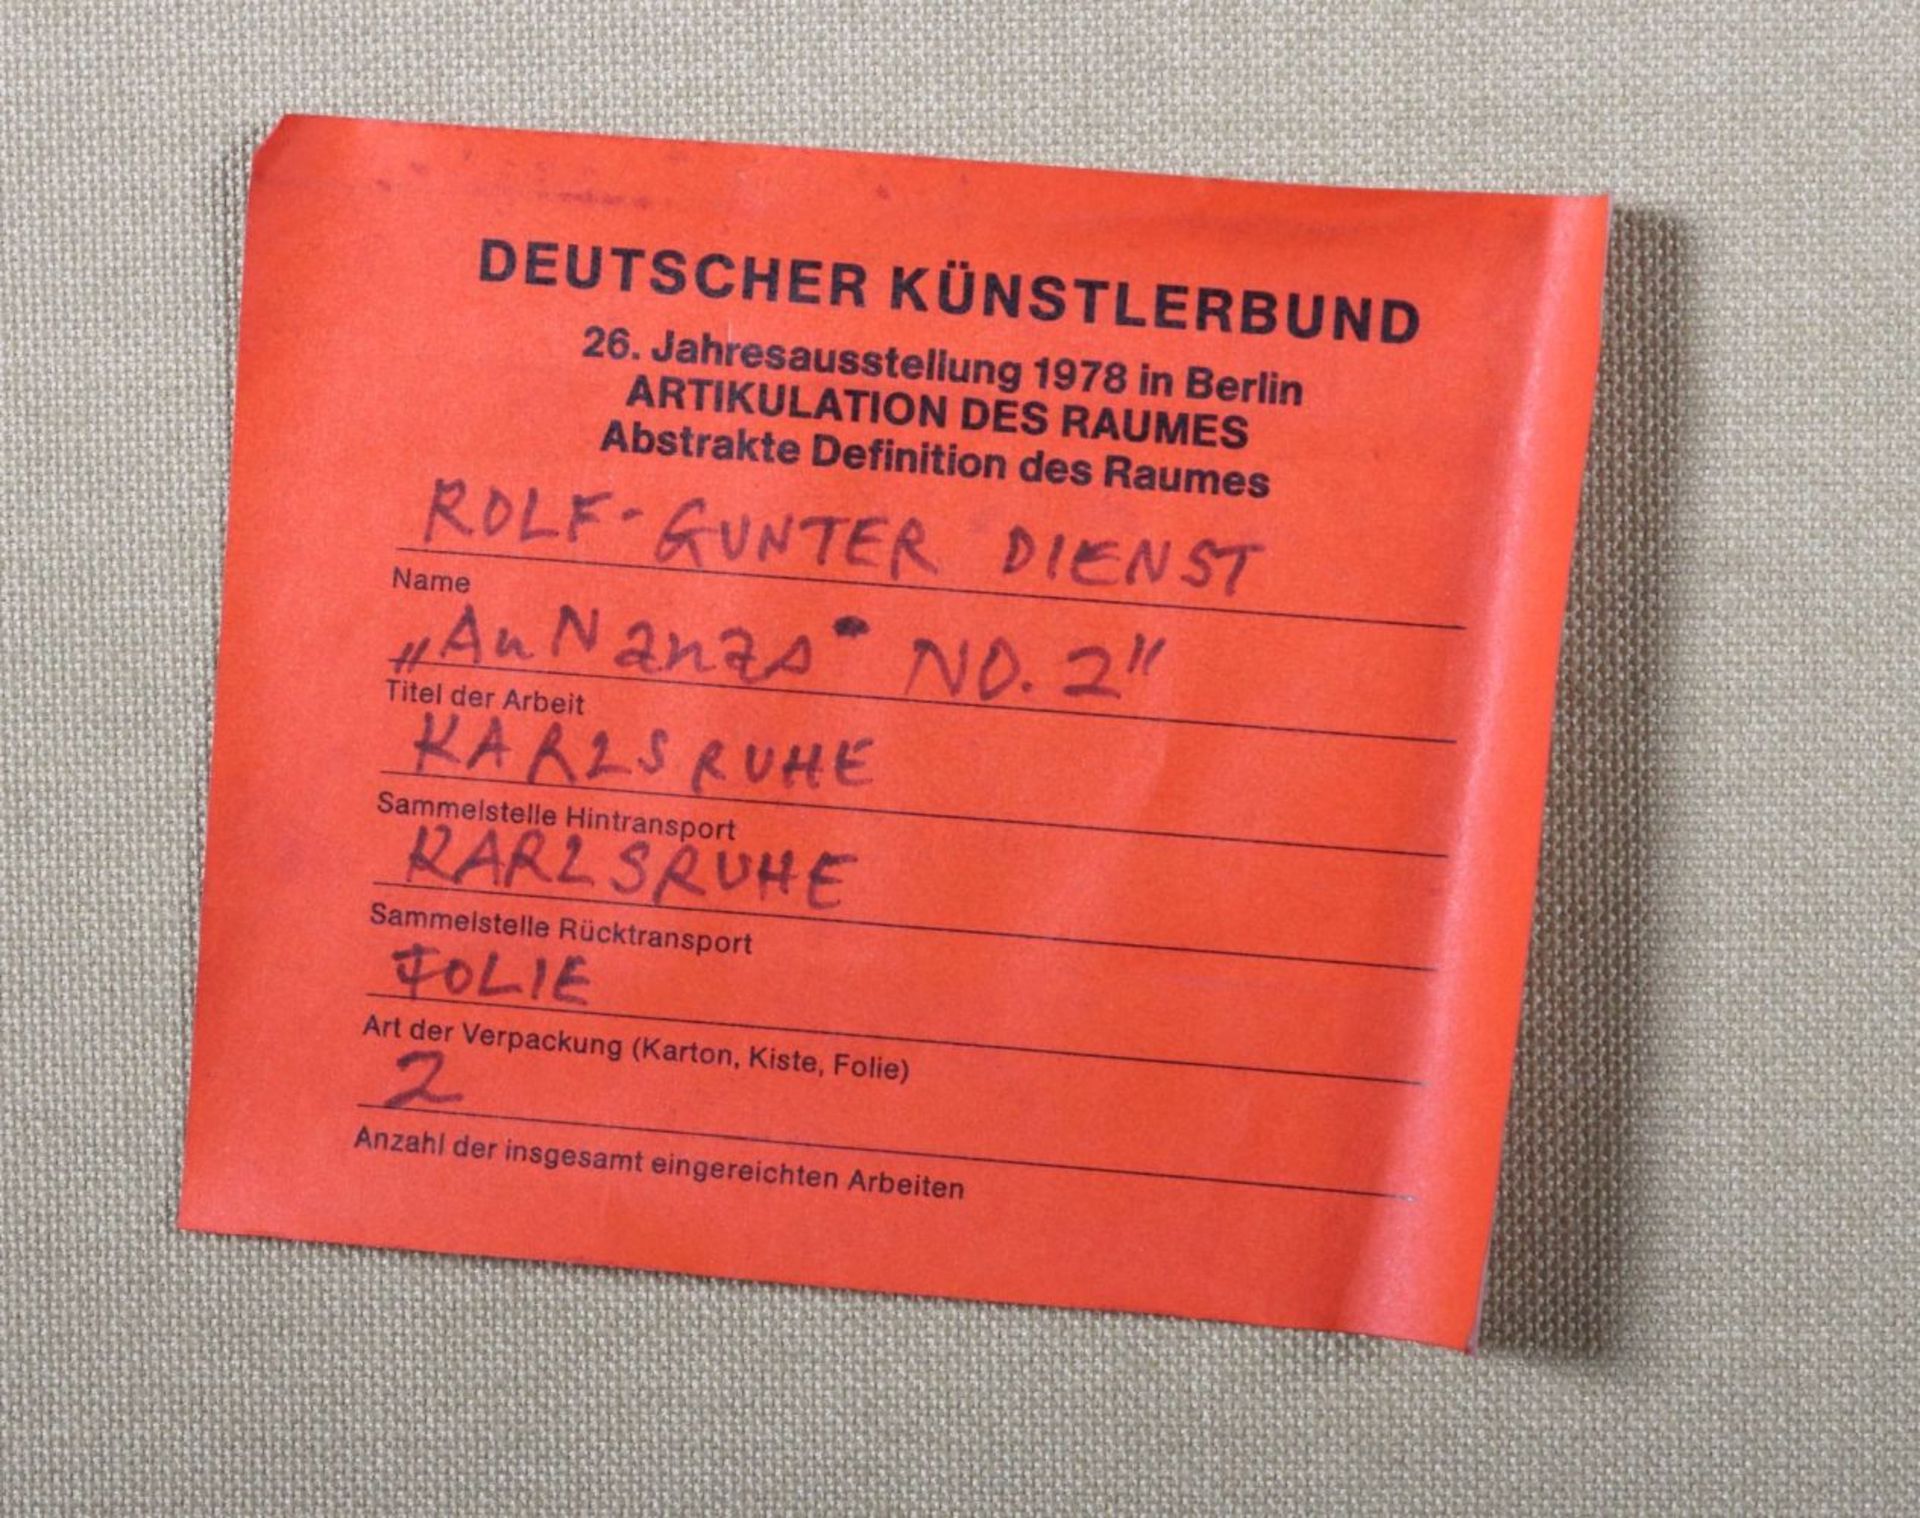 Dienst, Rolf-Gunter Kiel 1942 - 2016 - Image 3 of 4